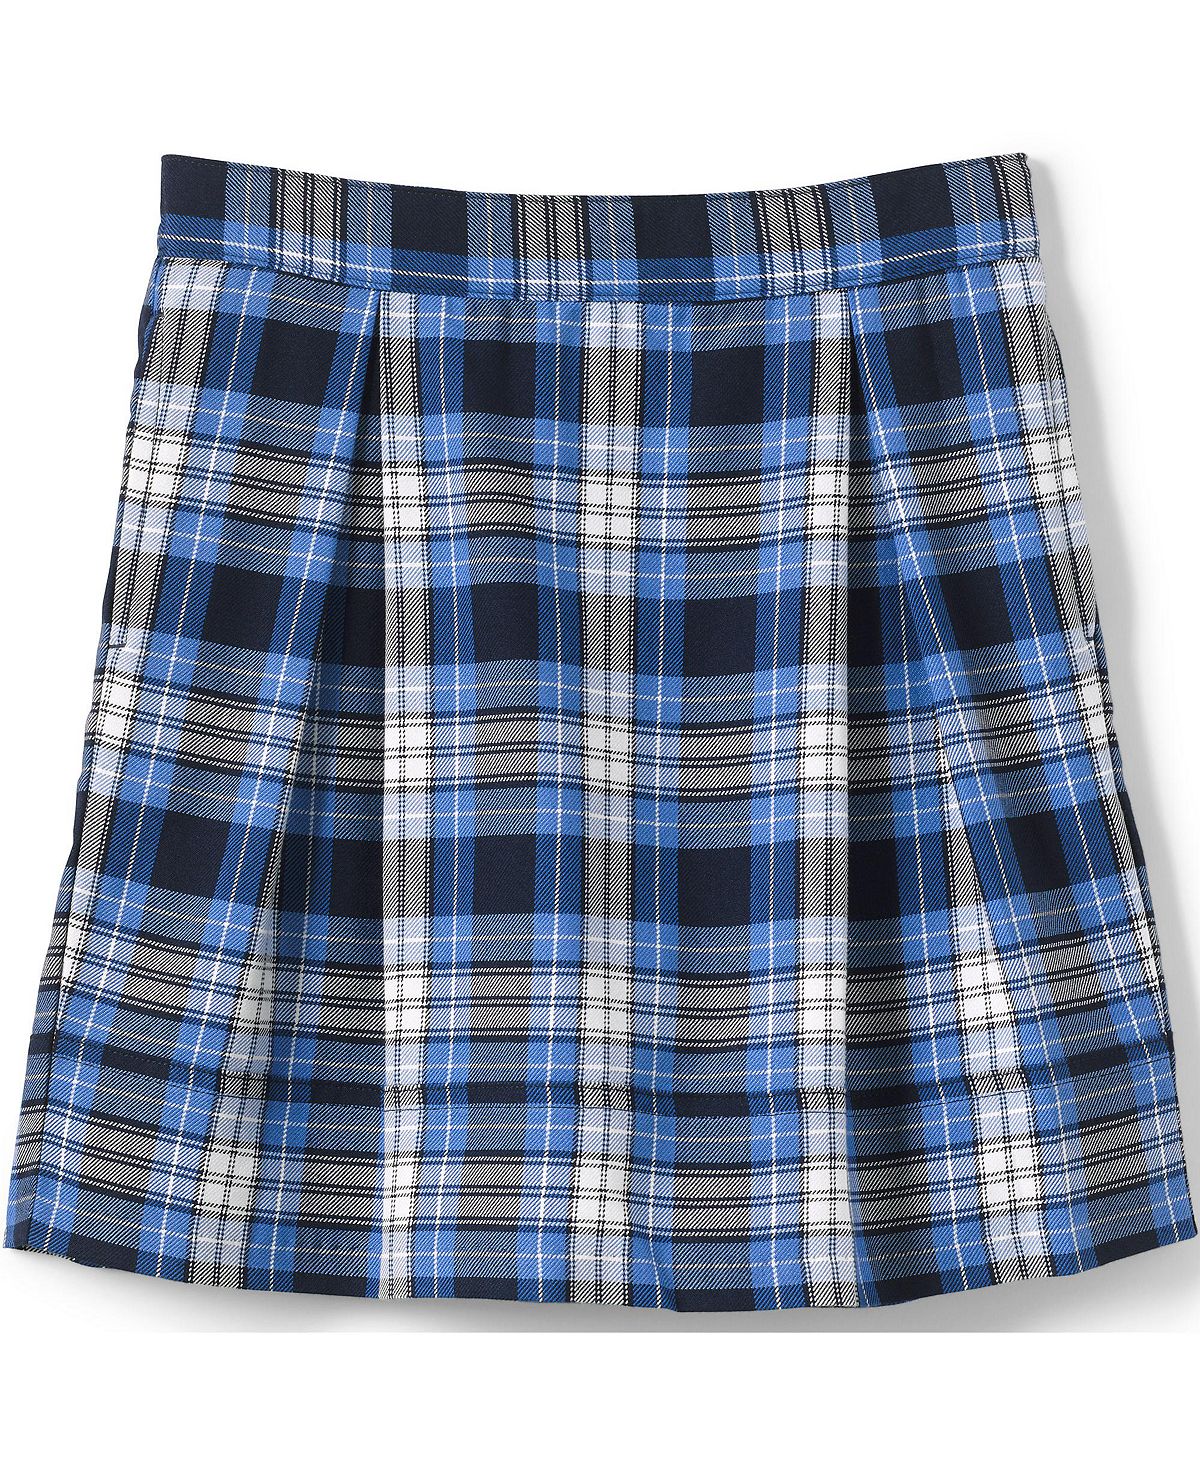 Школьная форма для девочек, клетчатая плиссированная юбка до колена Lands' End детская униформа для девочек плиссированная юбка школьная форма в японском стиле с завышенной талией клетчатая юбка трапеция милый комп